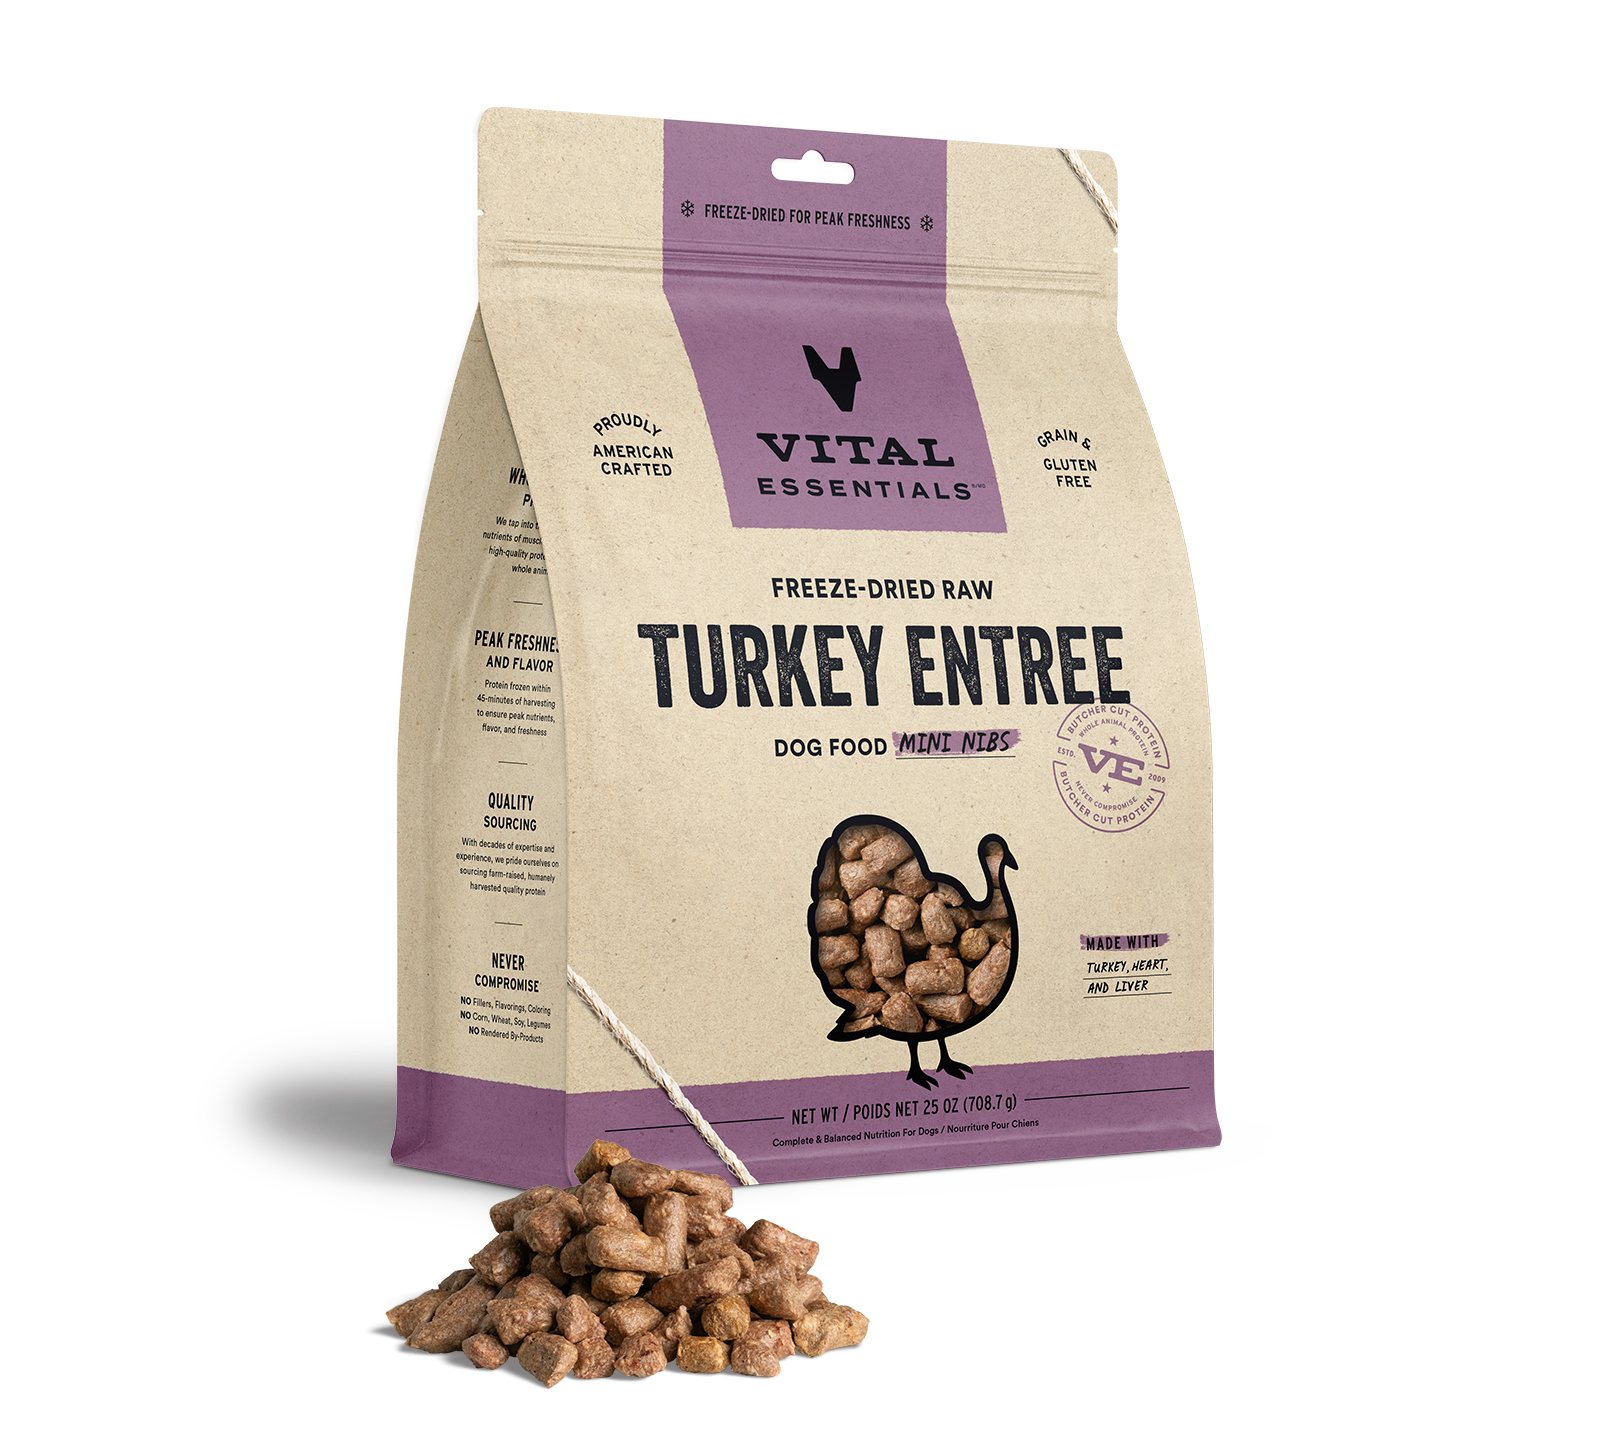 Vital Essentials Freeze-Dried Raw Turkey Entree Dog Food Mini Nibs, 25 oz - Items on Sale Now